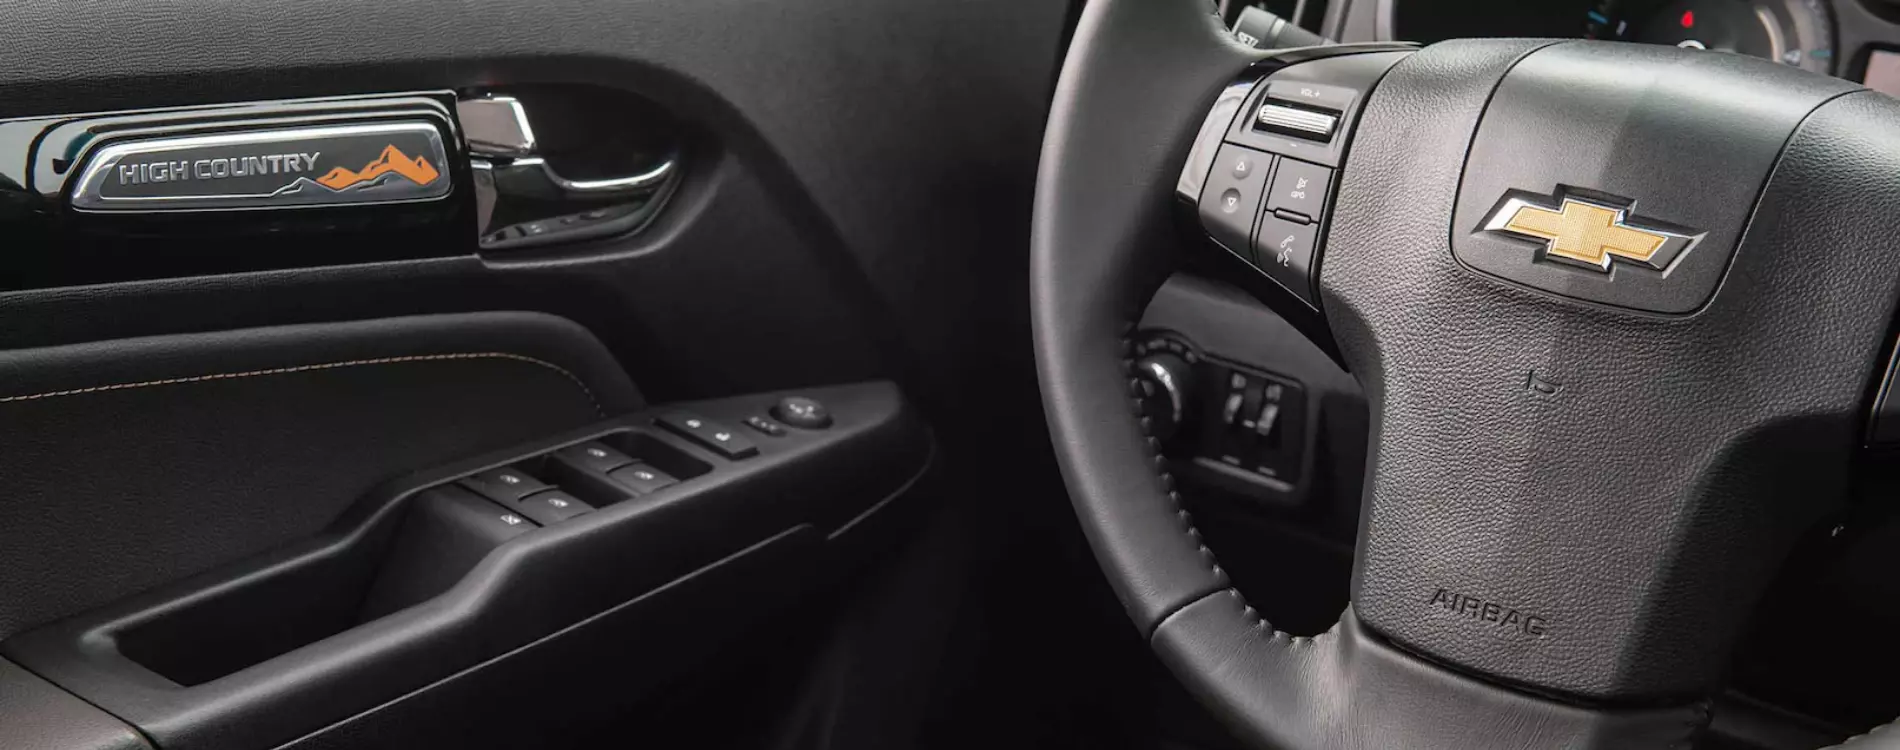 Fotografia feita no interior do veículo, mostrando alguns detalhes como os botões no volante e na porta do motorista